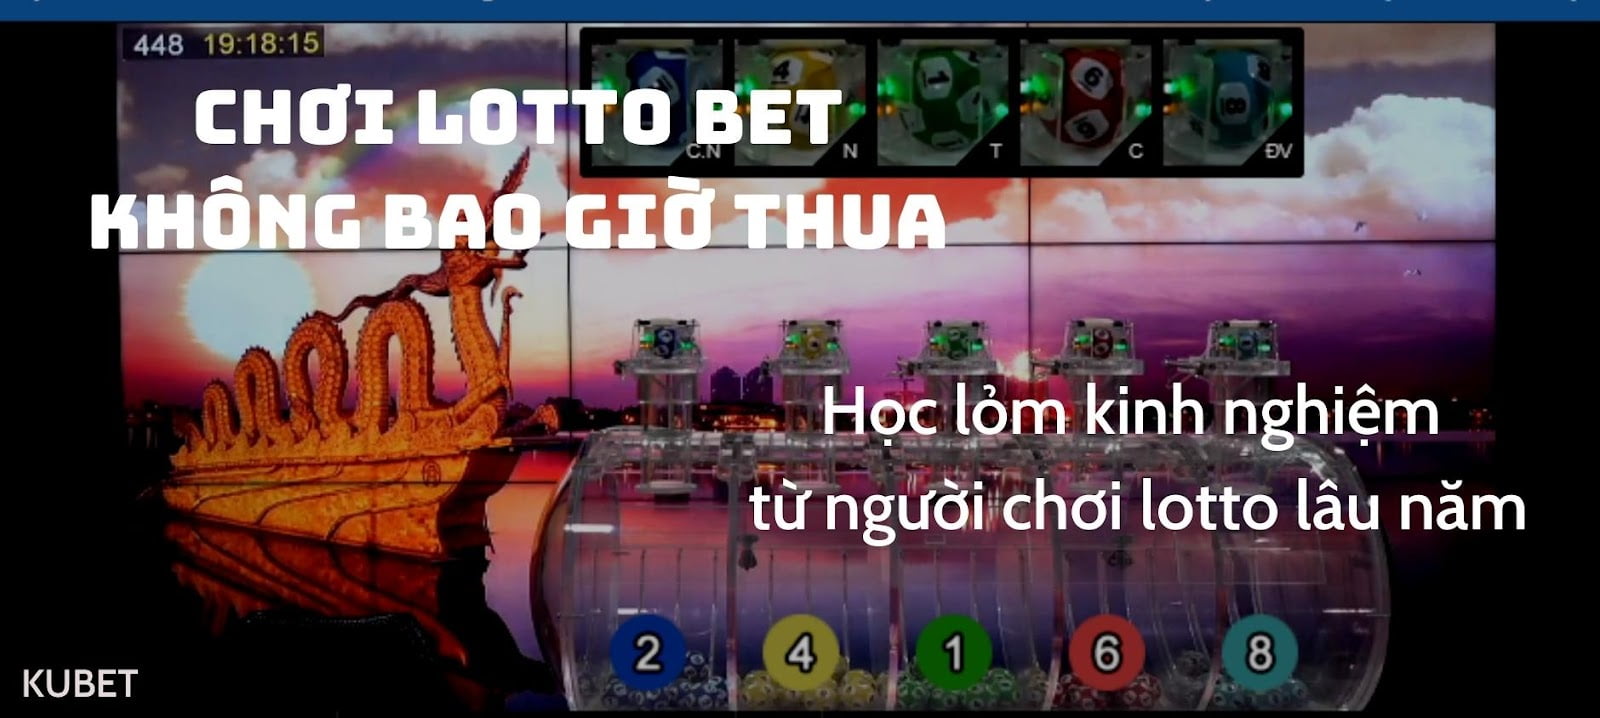 Cách chơi lotto bet trên ku casino